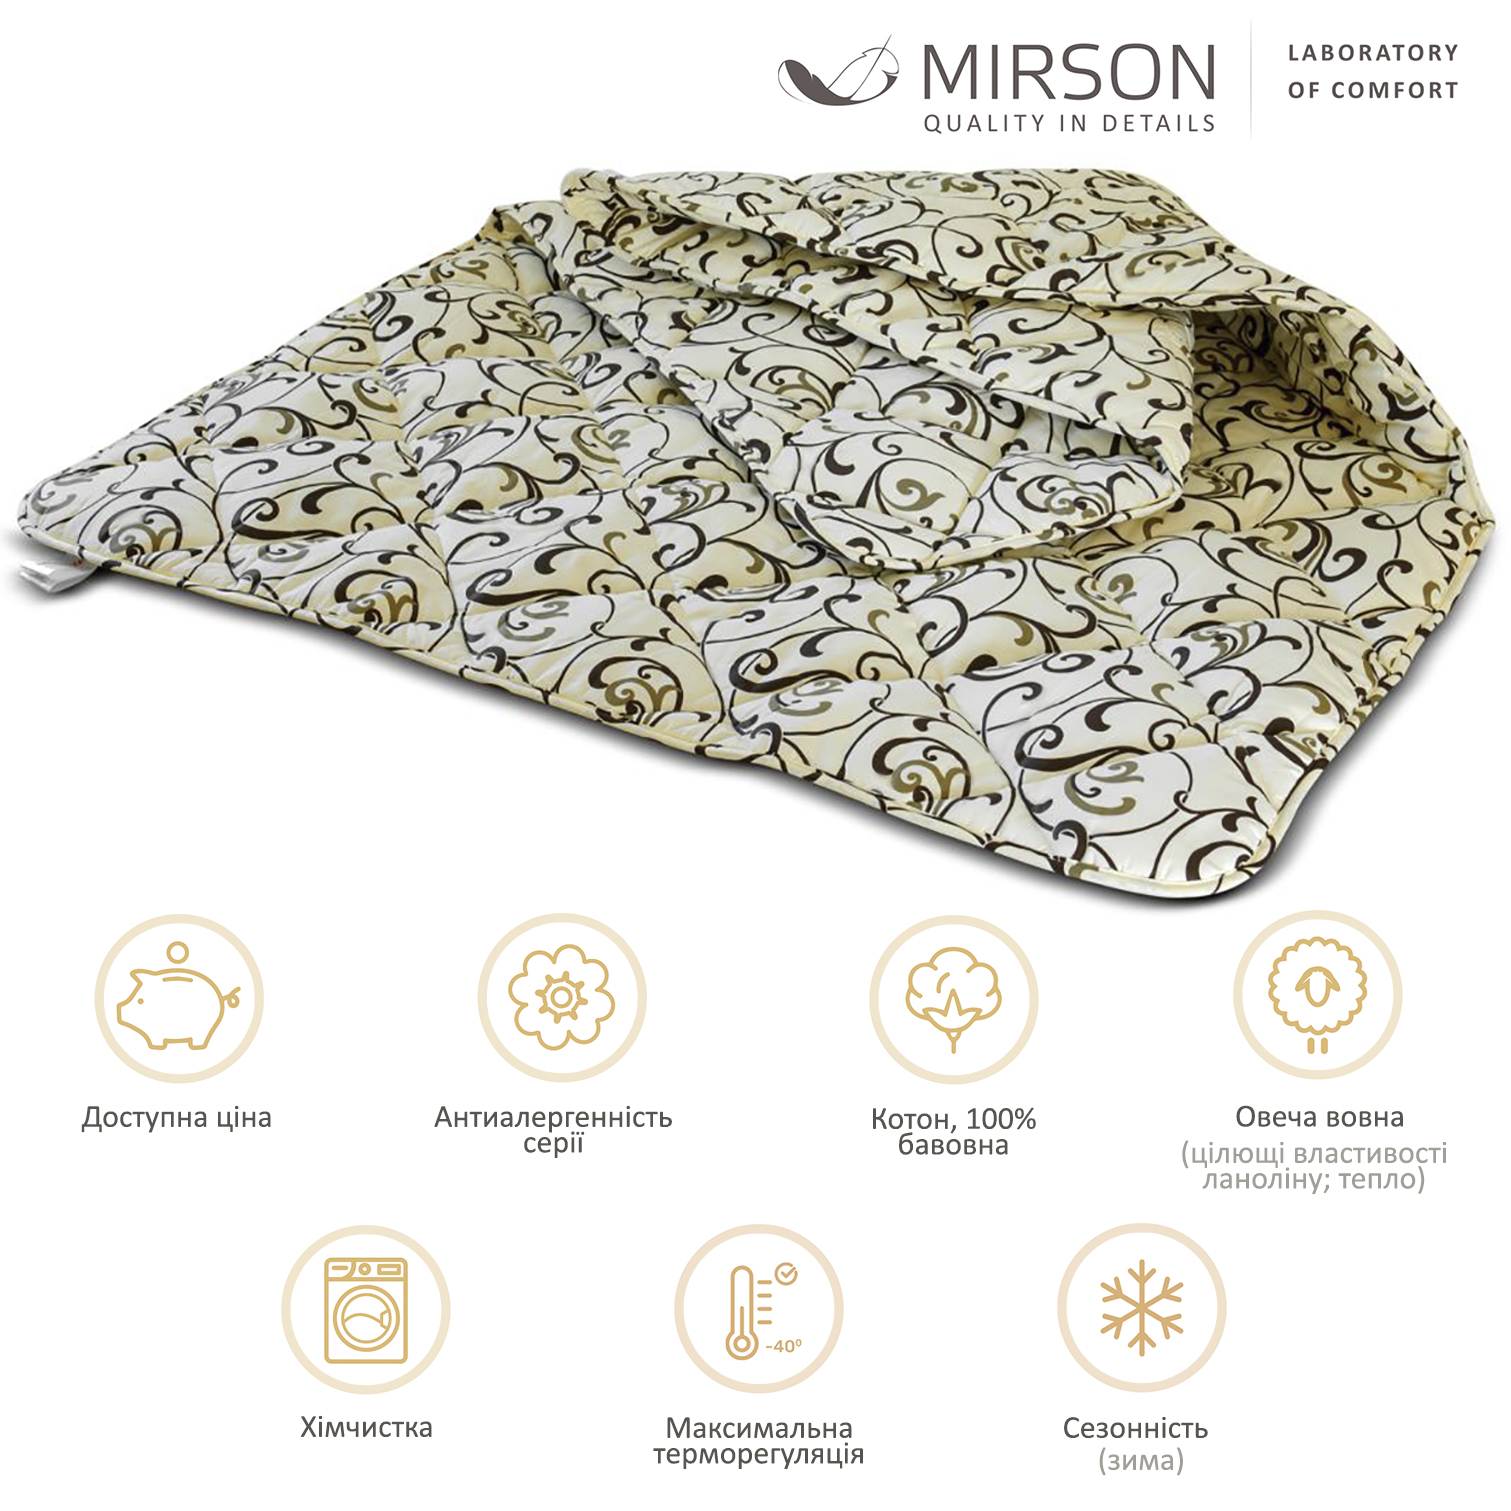 Одеяло шерстяное MirSon №018, зимнее, 110x140 см, бежевое с узором - фото 4